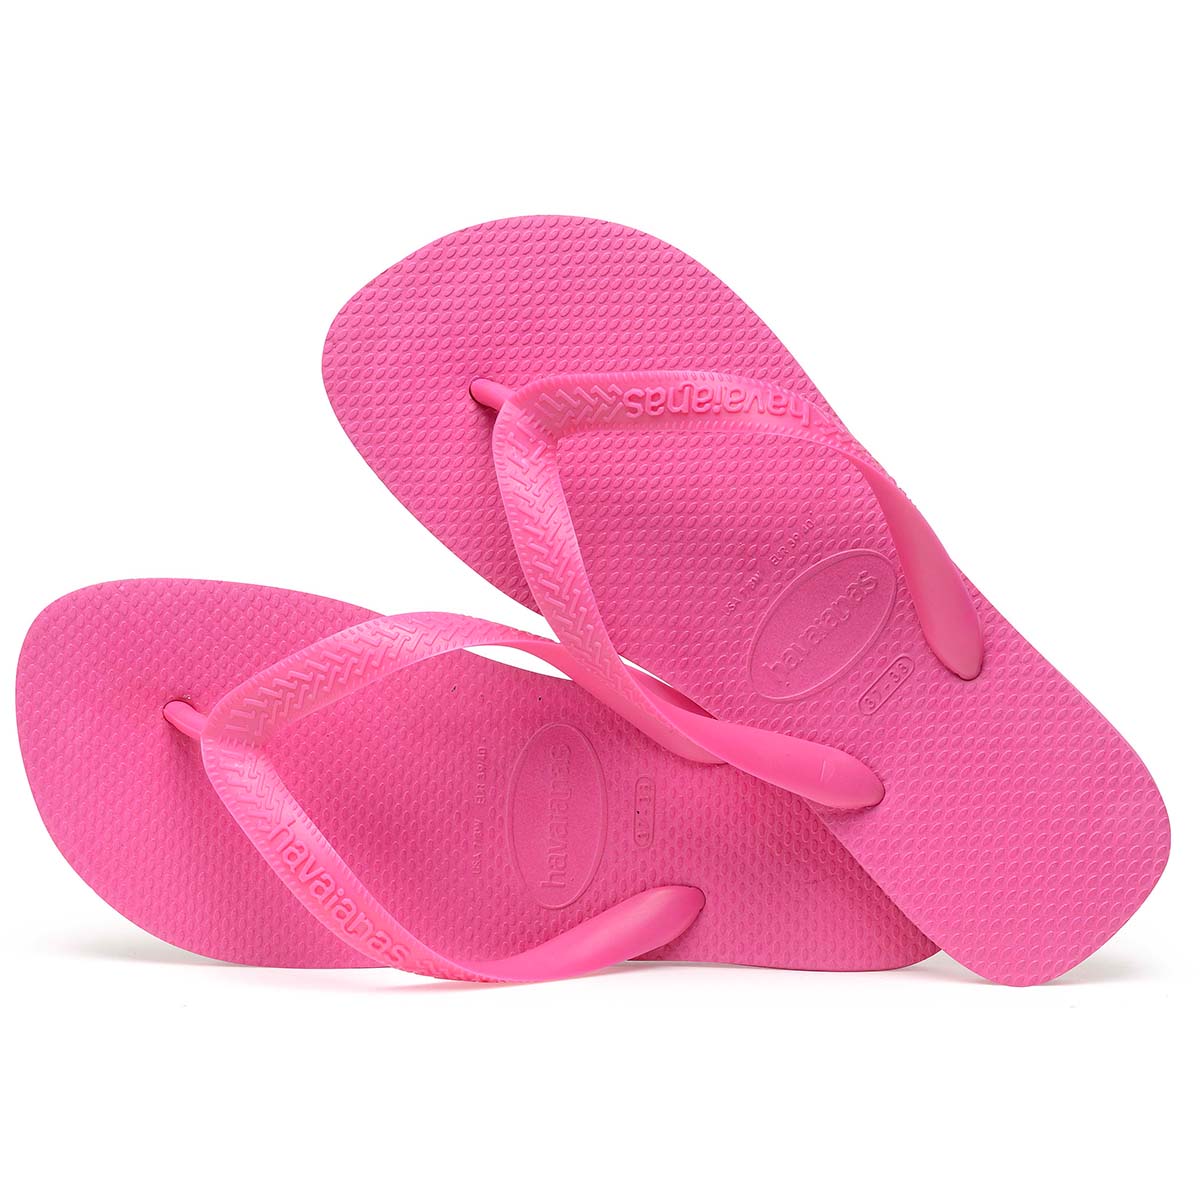 Havaianas Top Unisex Erwachsene Sandalen Zehentrenner Badelatschen 4000029 Pink